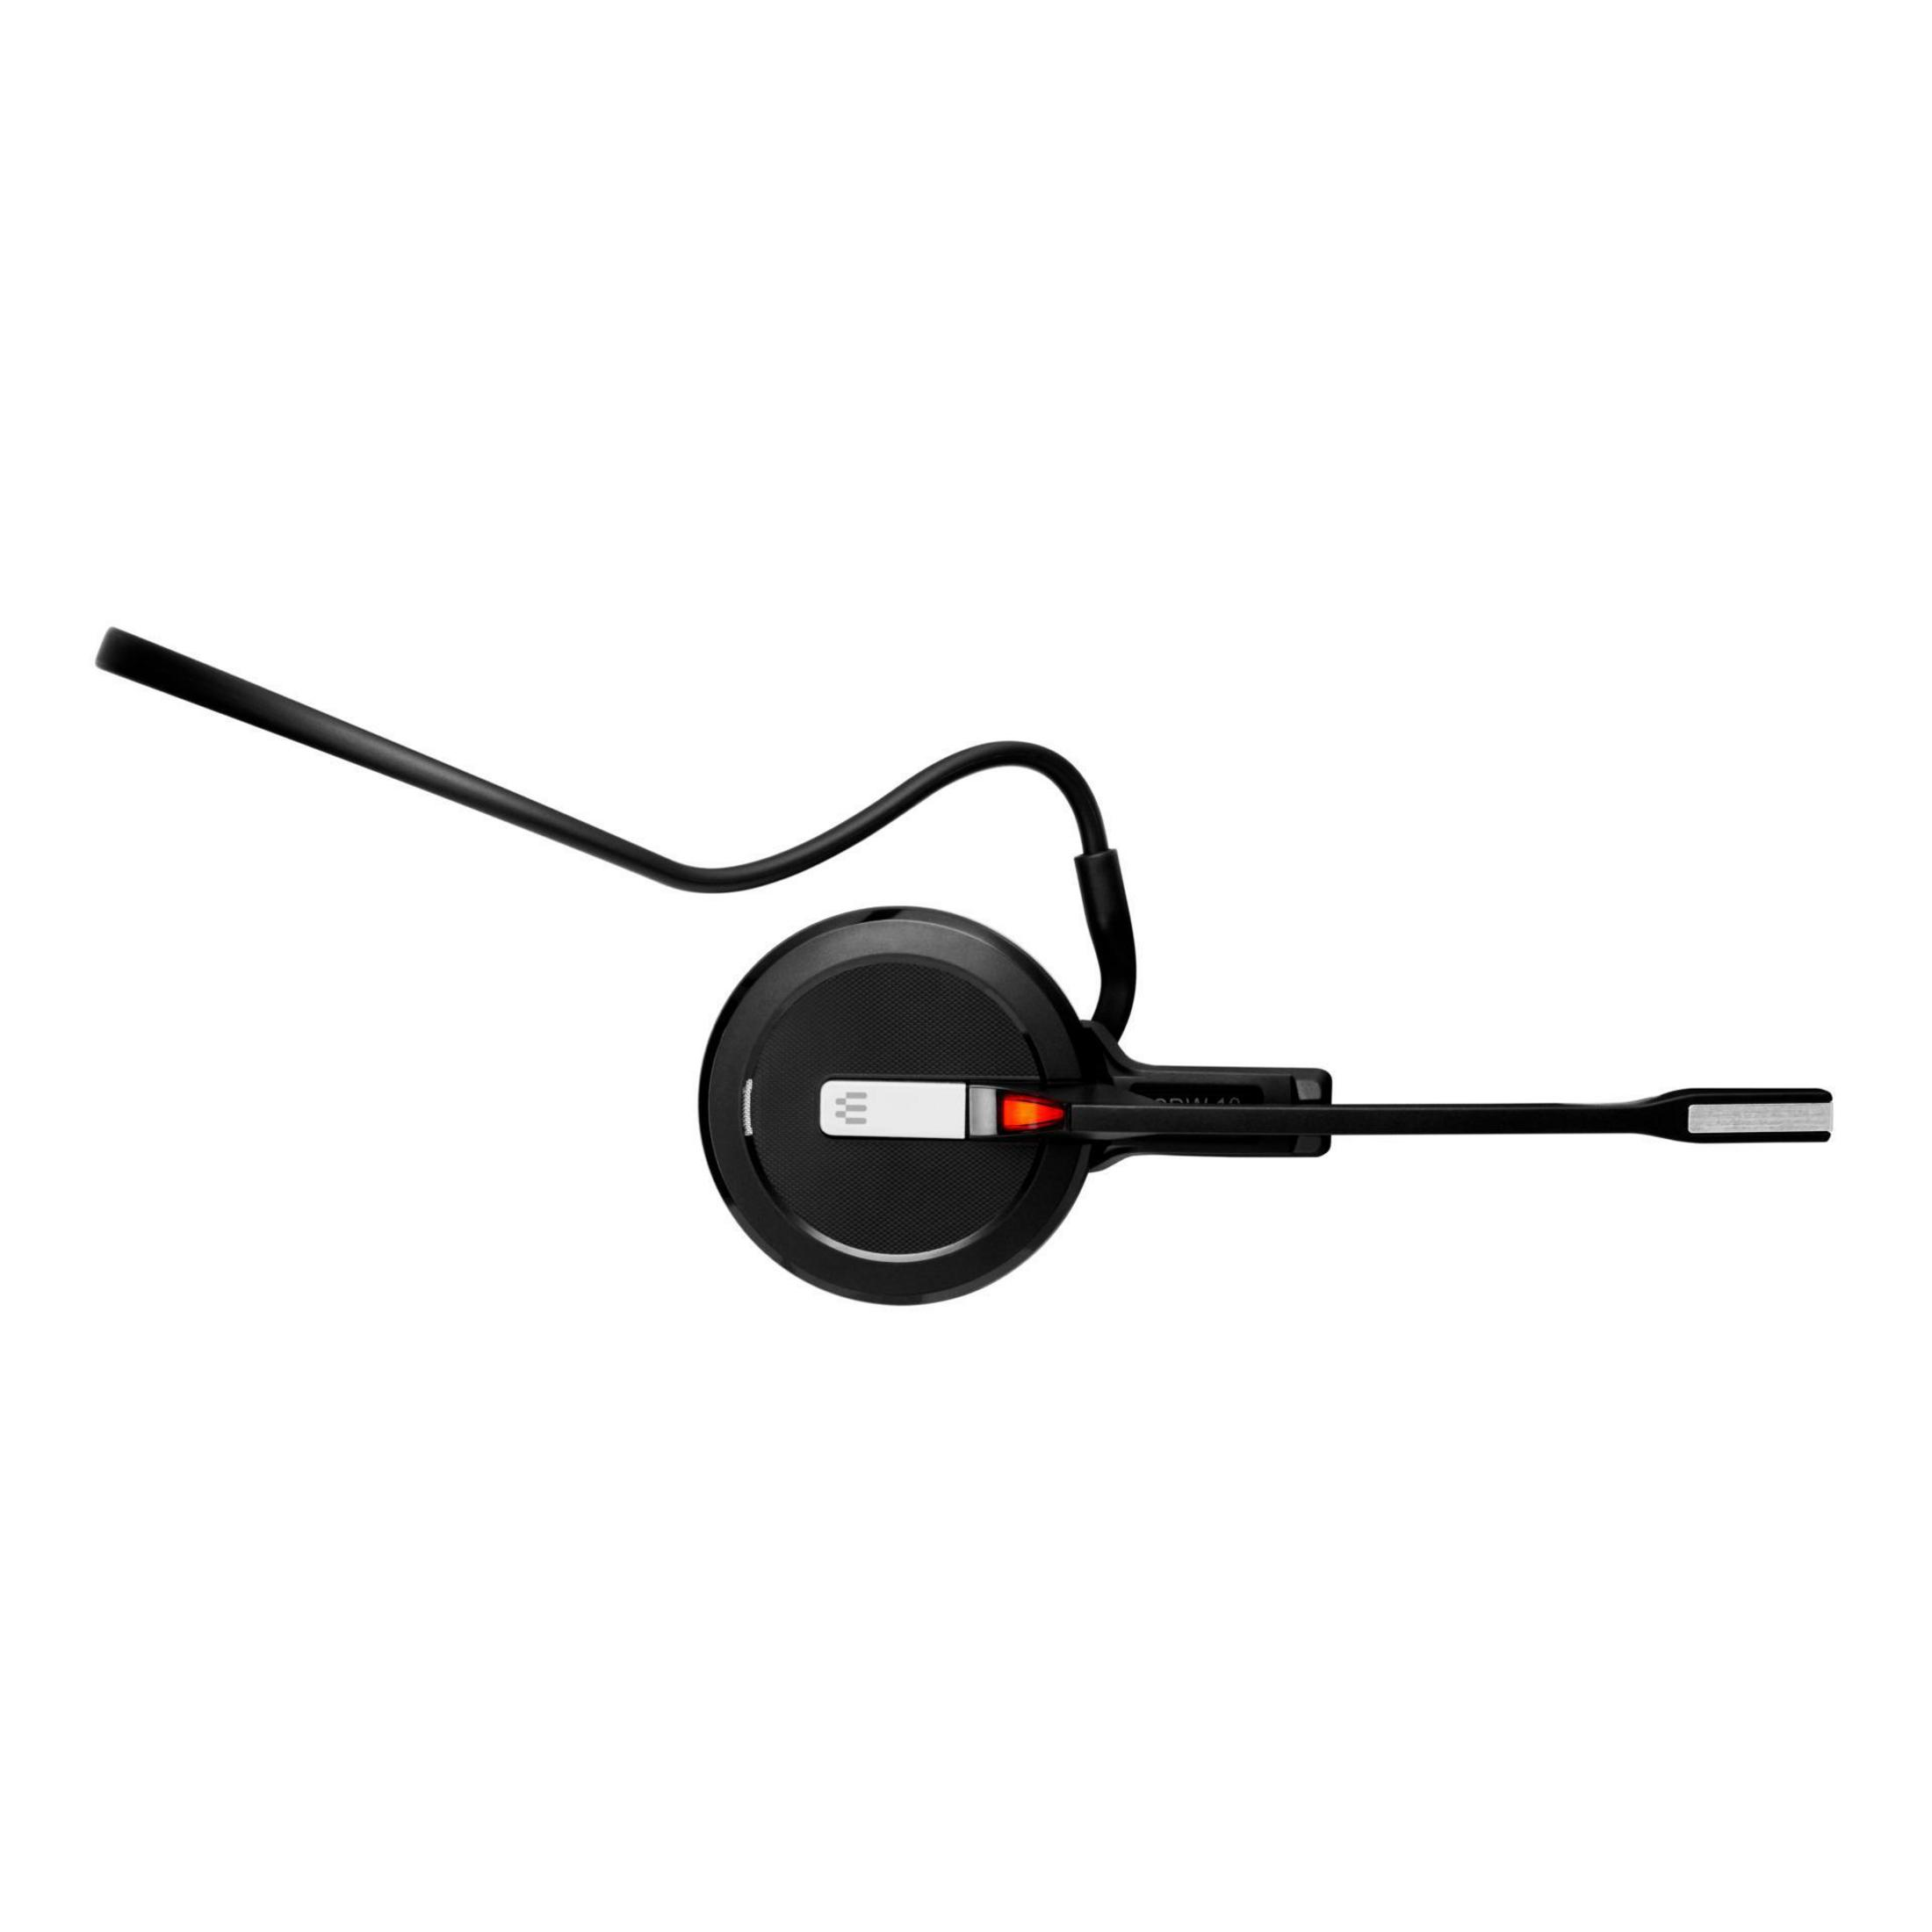 EPOS B2B IMPACT SDW 5014 EU Schwarz Headset